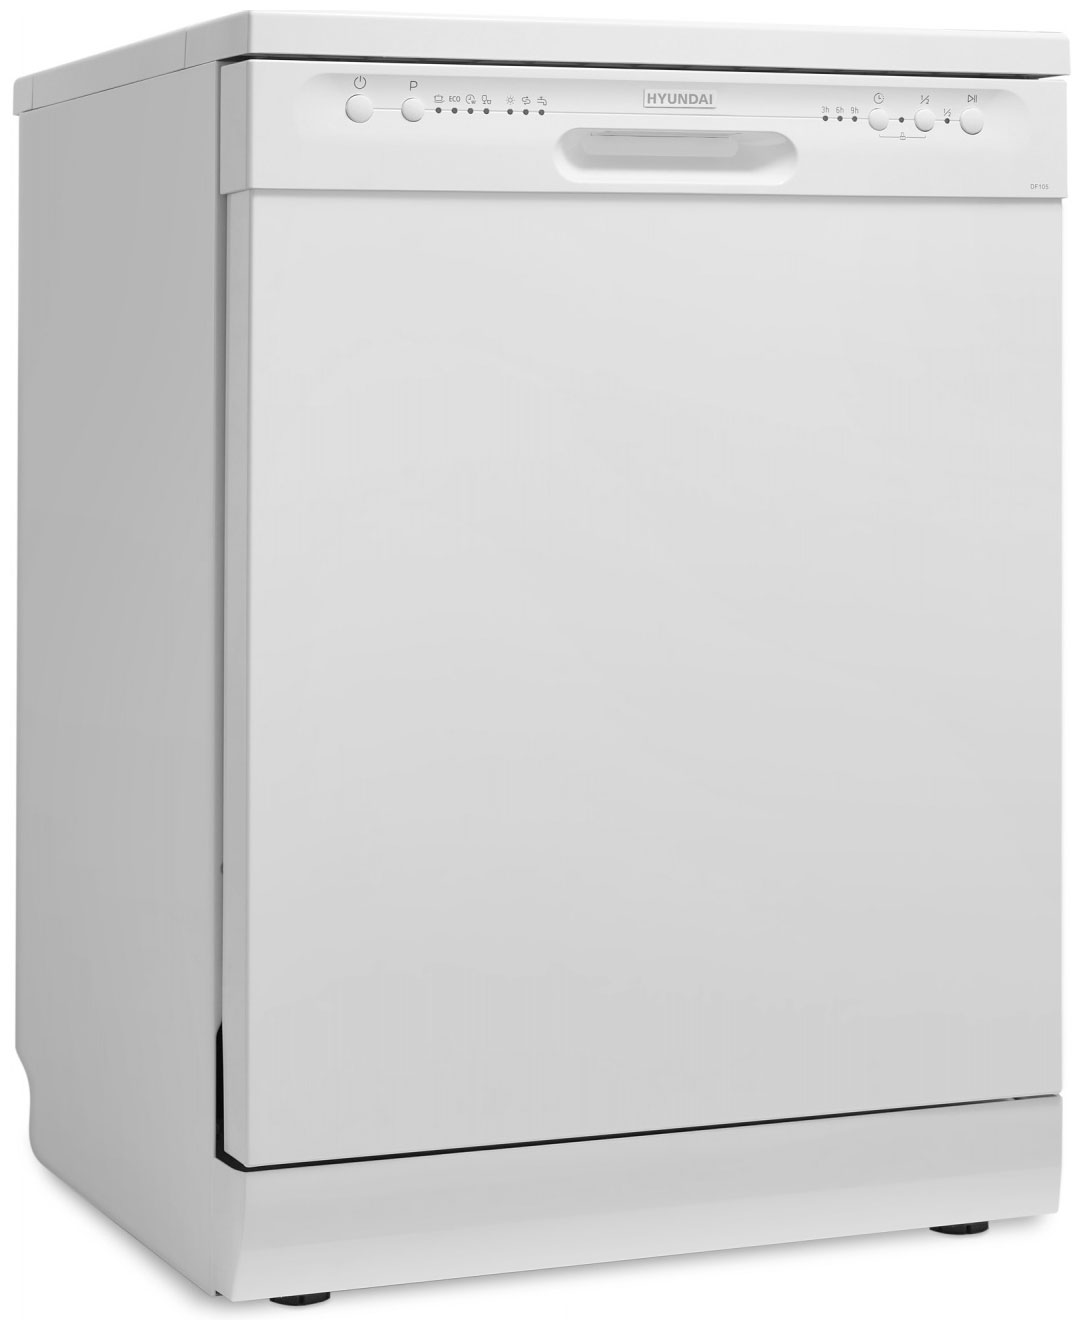 Посудомоечная машина Hyundai DF105 белый компактная посудомоечная машина hyundai dt305 белый